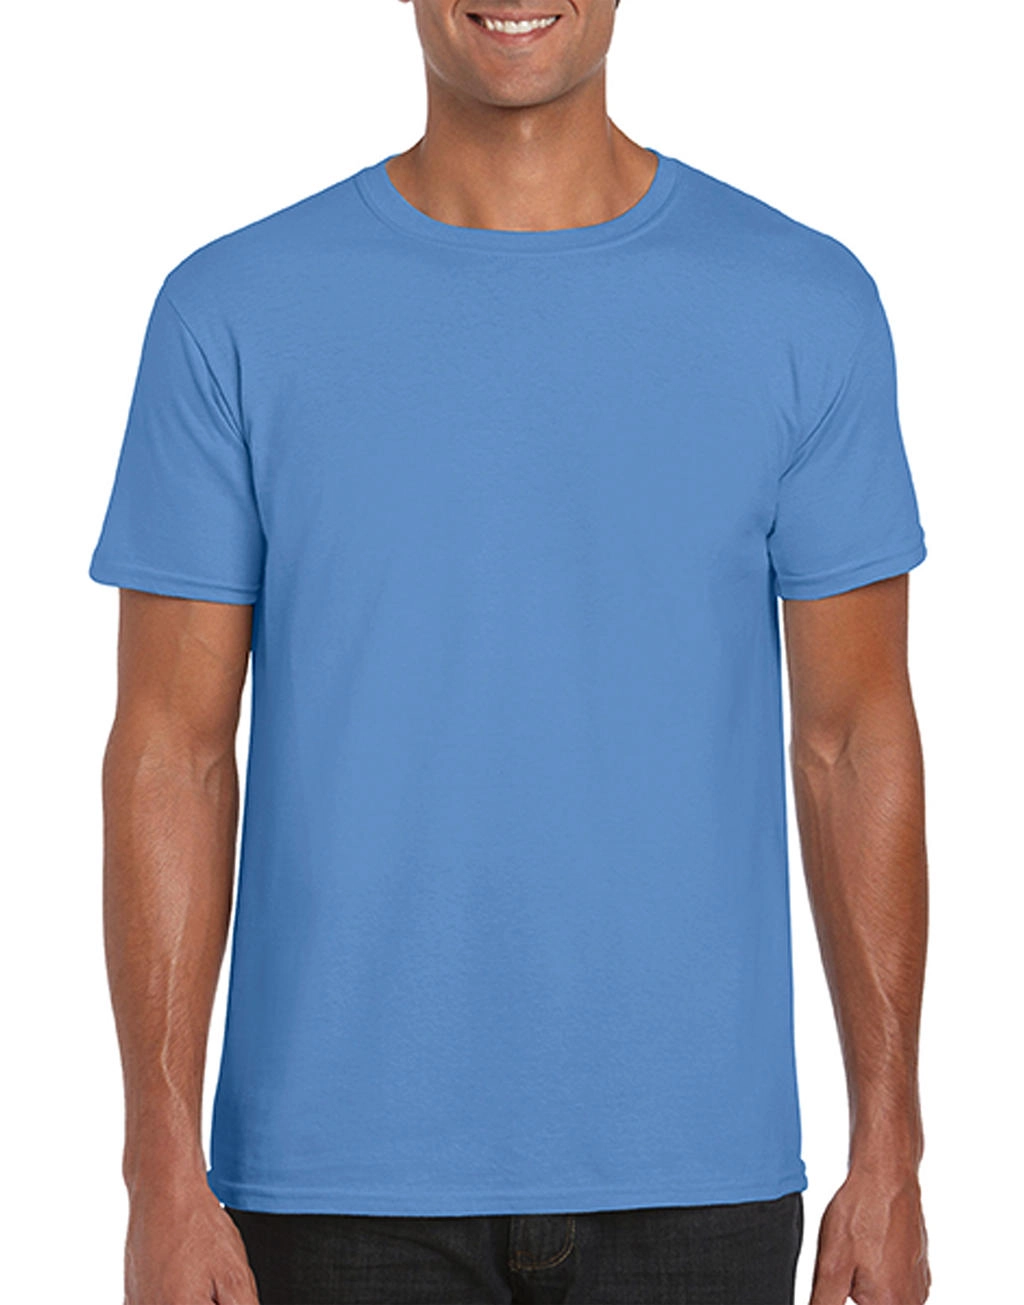 Softstyle® Ring Spun T-Shirt zum Besticken und Bedrucken in der Farbe Carolina Blue mit Ihren Logo, Schriftzug oder Motiv.